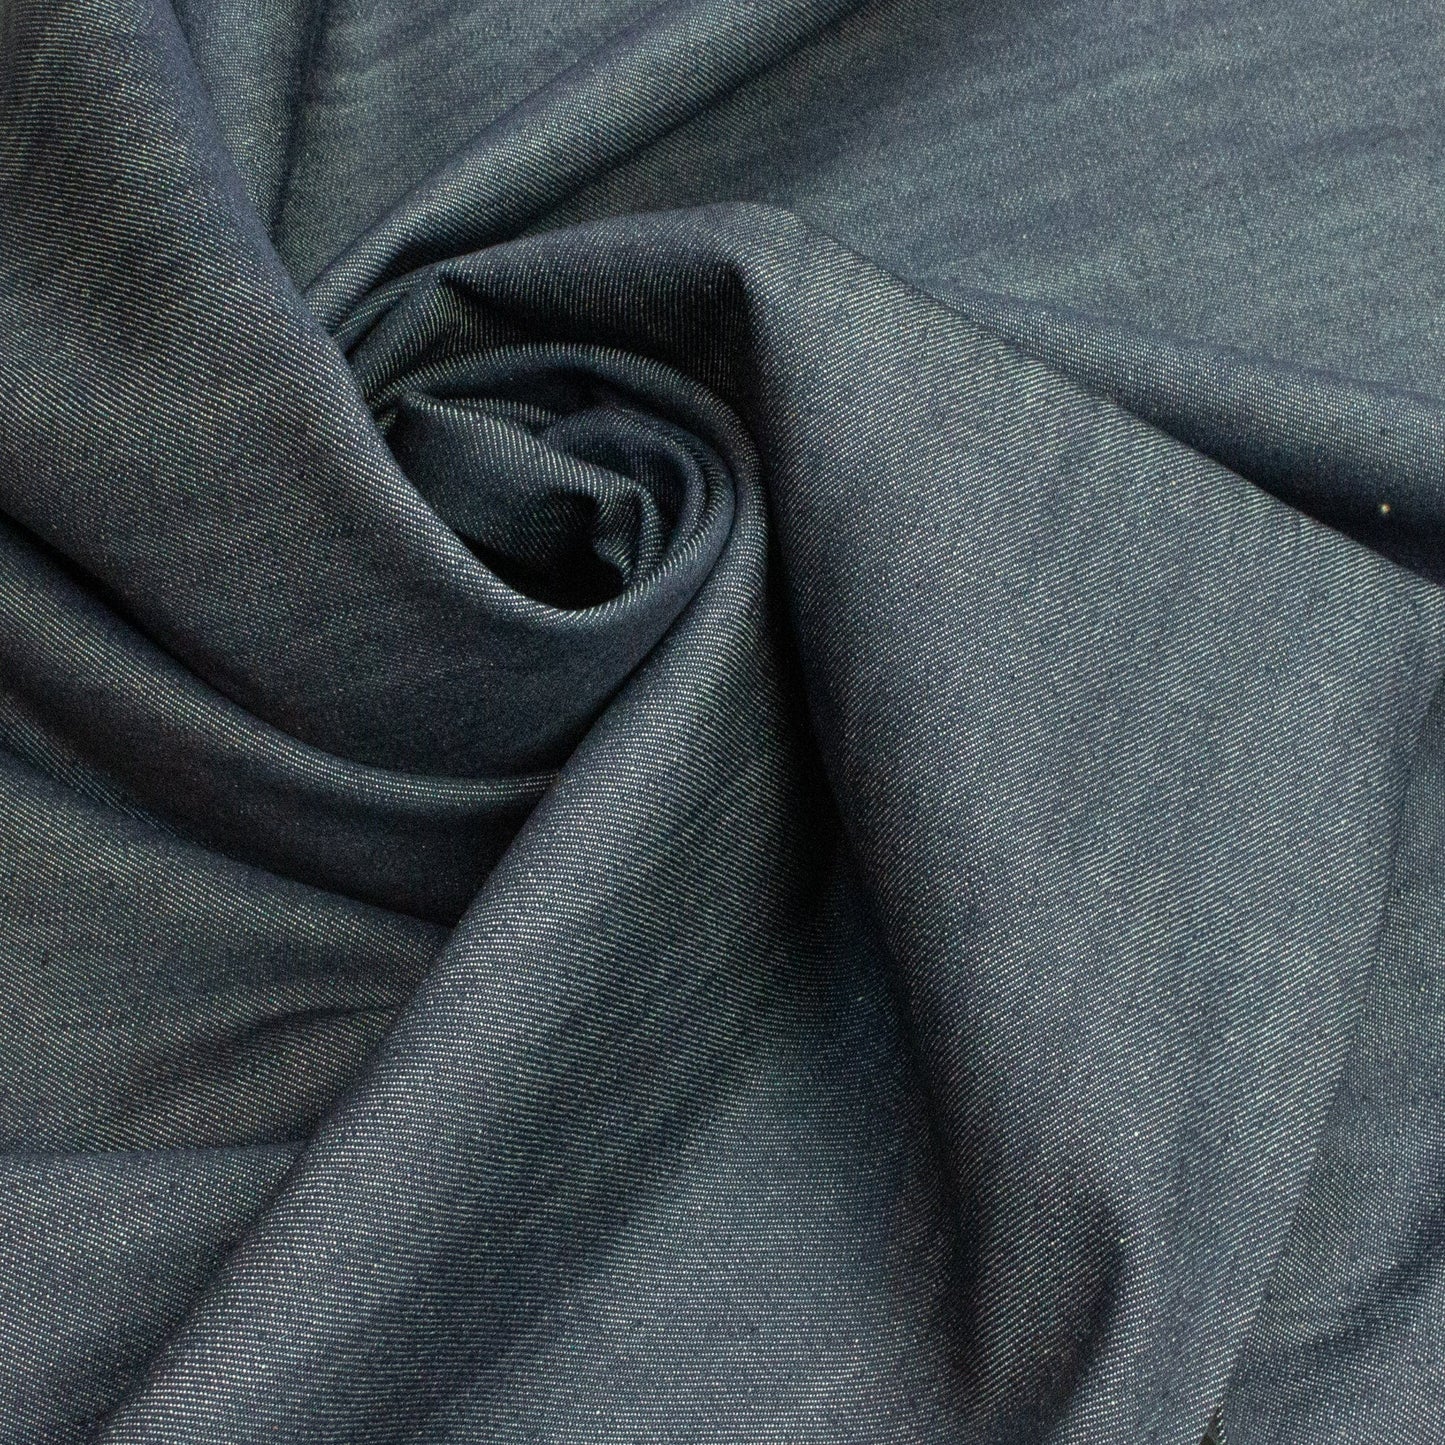 Medium Weight Cotton Denim in Dark Blue